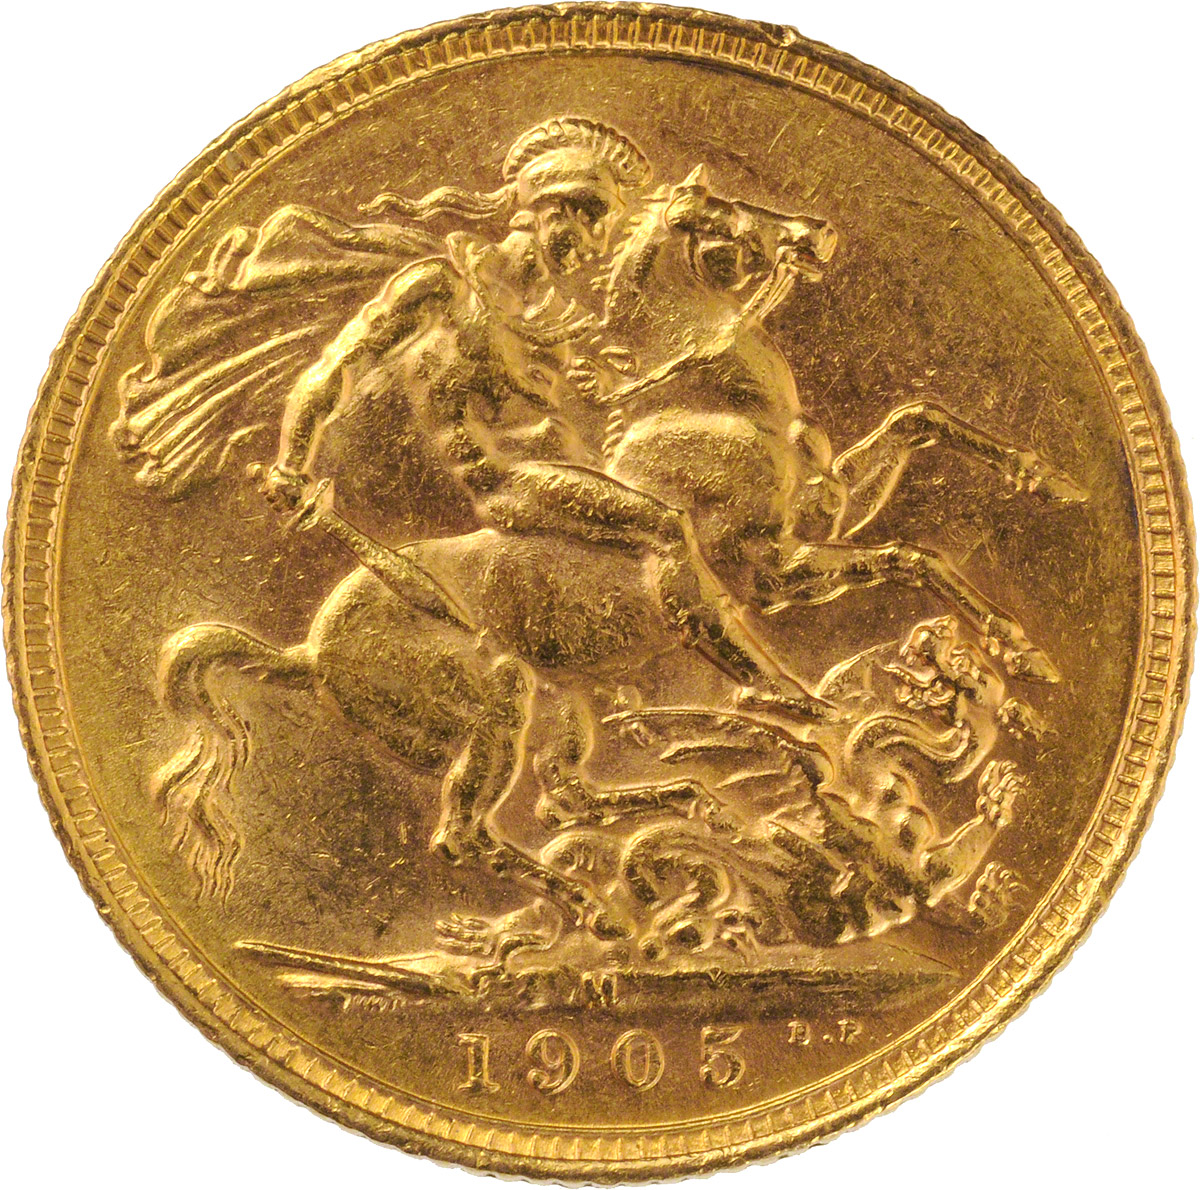 1905 Εδουάρδος Ζ’ (Νομισματοκοπείο Μελβούρνης)